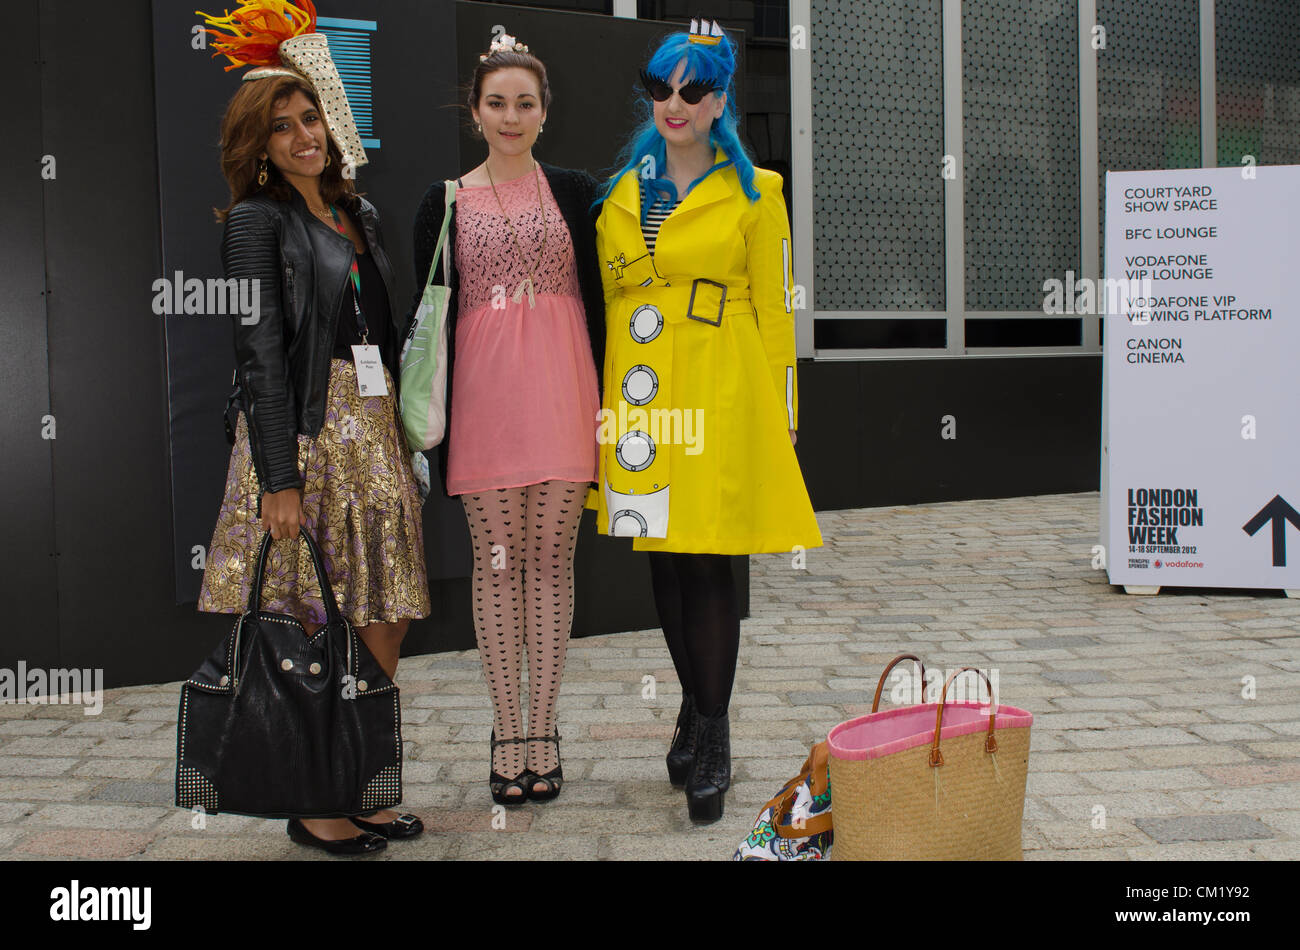 3 femmes London Fashion week 16 septembre 2012 UK Somerset House, Londres Uk Banque D'Images